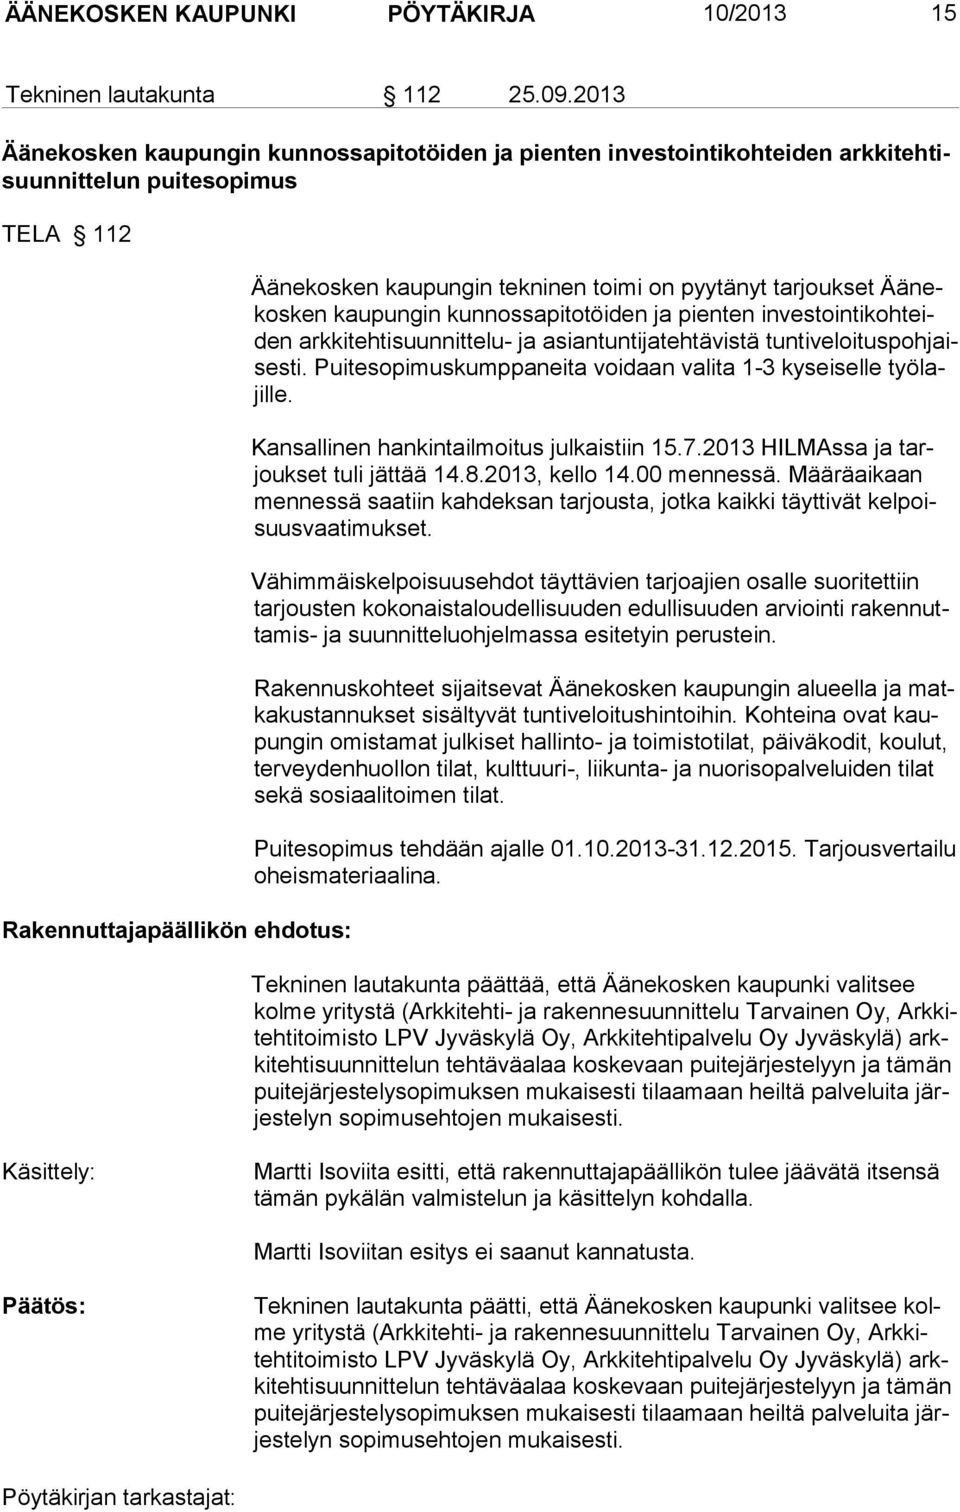 pyytänyt tarjoukset Äänekosken kaupungin kunnossapitotöiden ja pienten investointikohteiden arkkitehtisuunnittelu- ja asiantuntijatehtävistä tuntiveloituspohjaises ti.